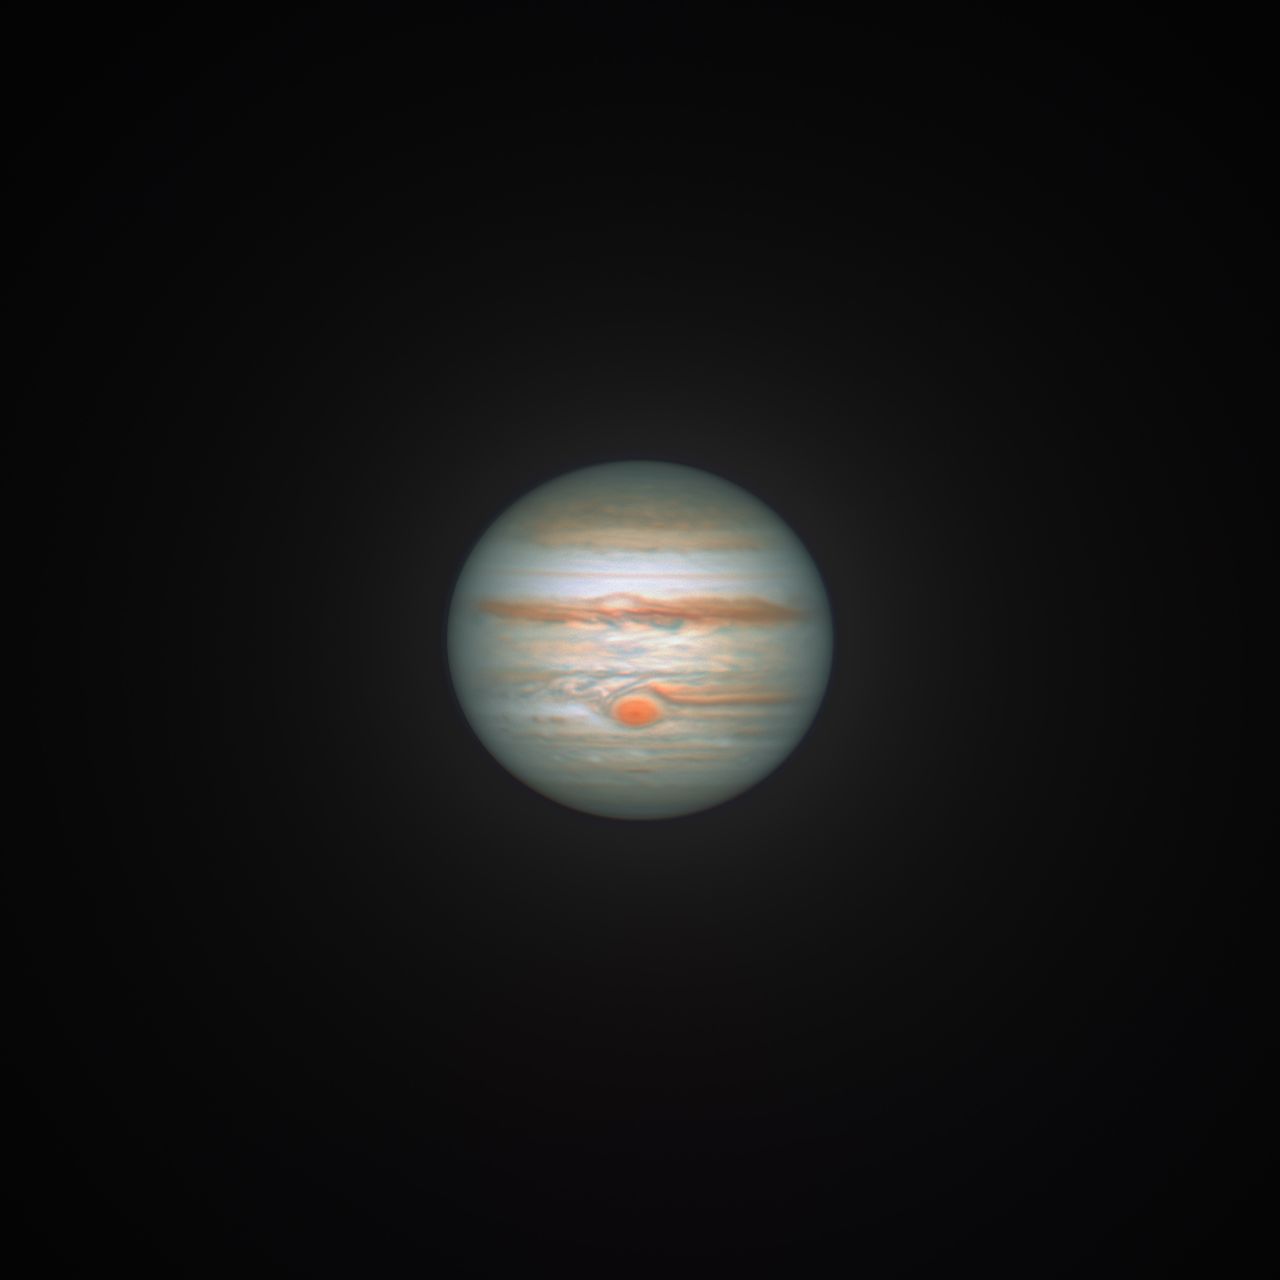 Genialne zdjęcie Jowisza w opozycji do Ziemi powstało z 600 tys. pojedynczych kadrów.